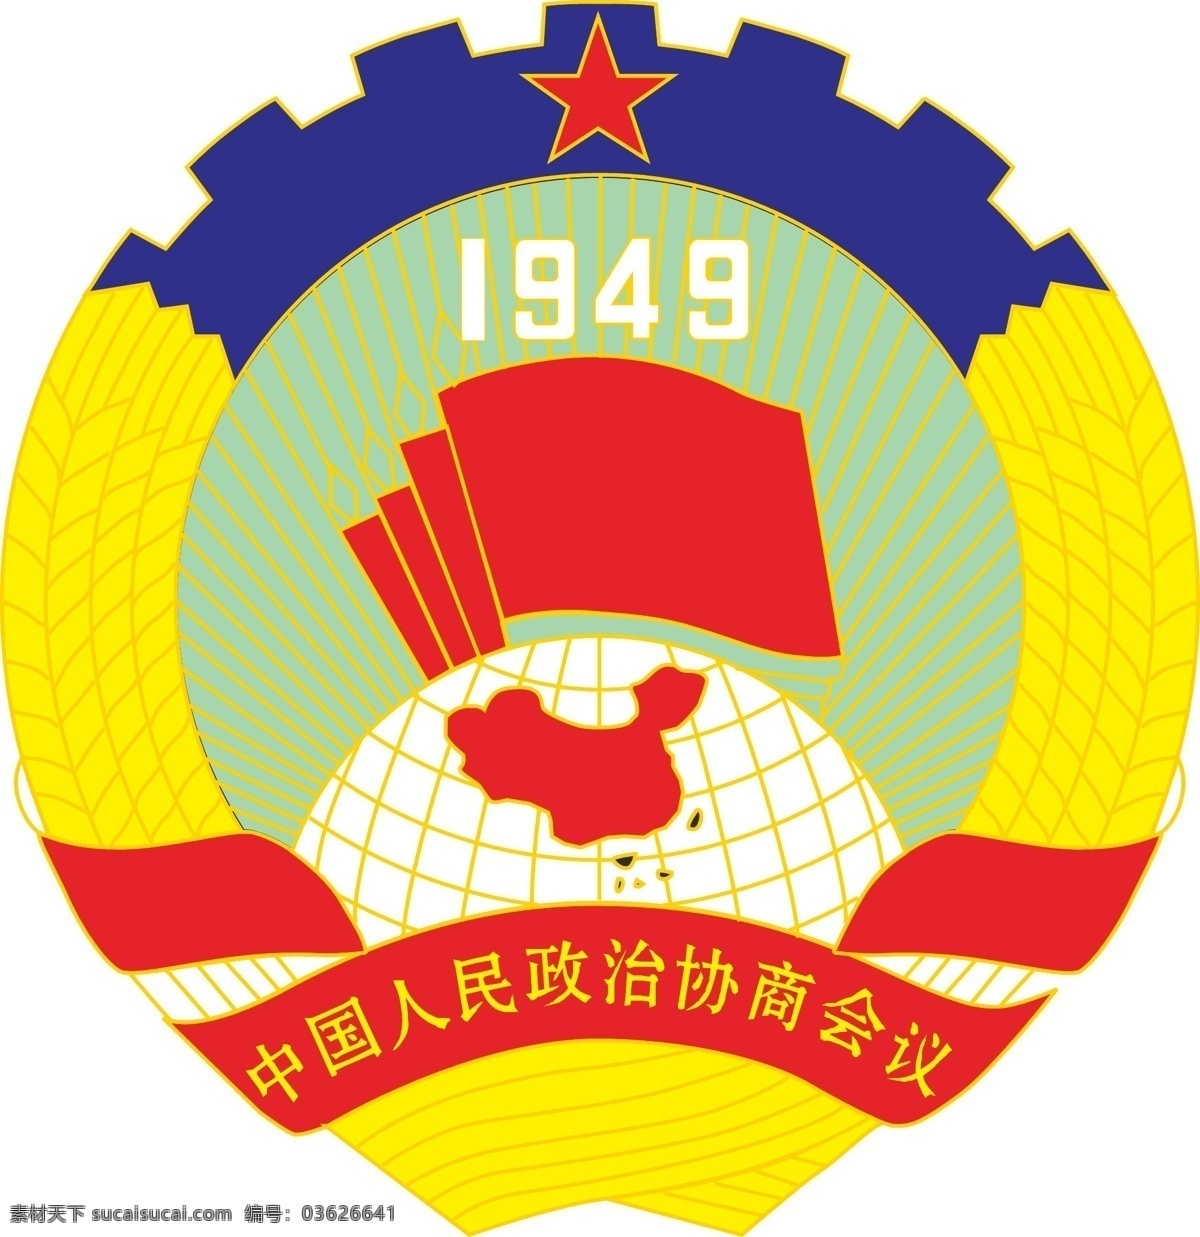 中国人民政治协商会议 中国 人民 政治 协商 会议 公共标识标志 标识标志图标 矢量